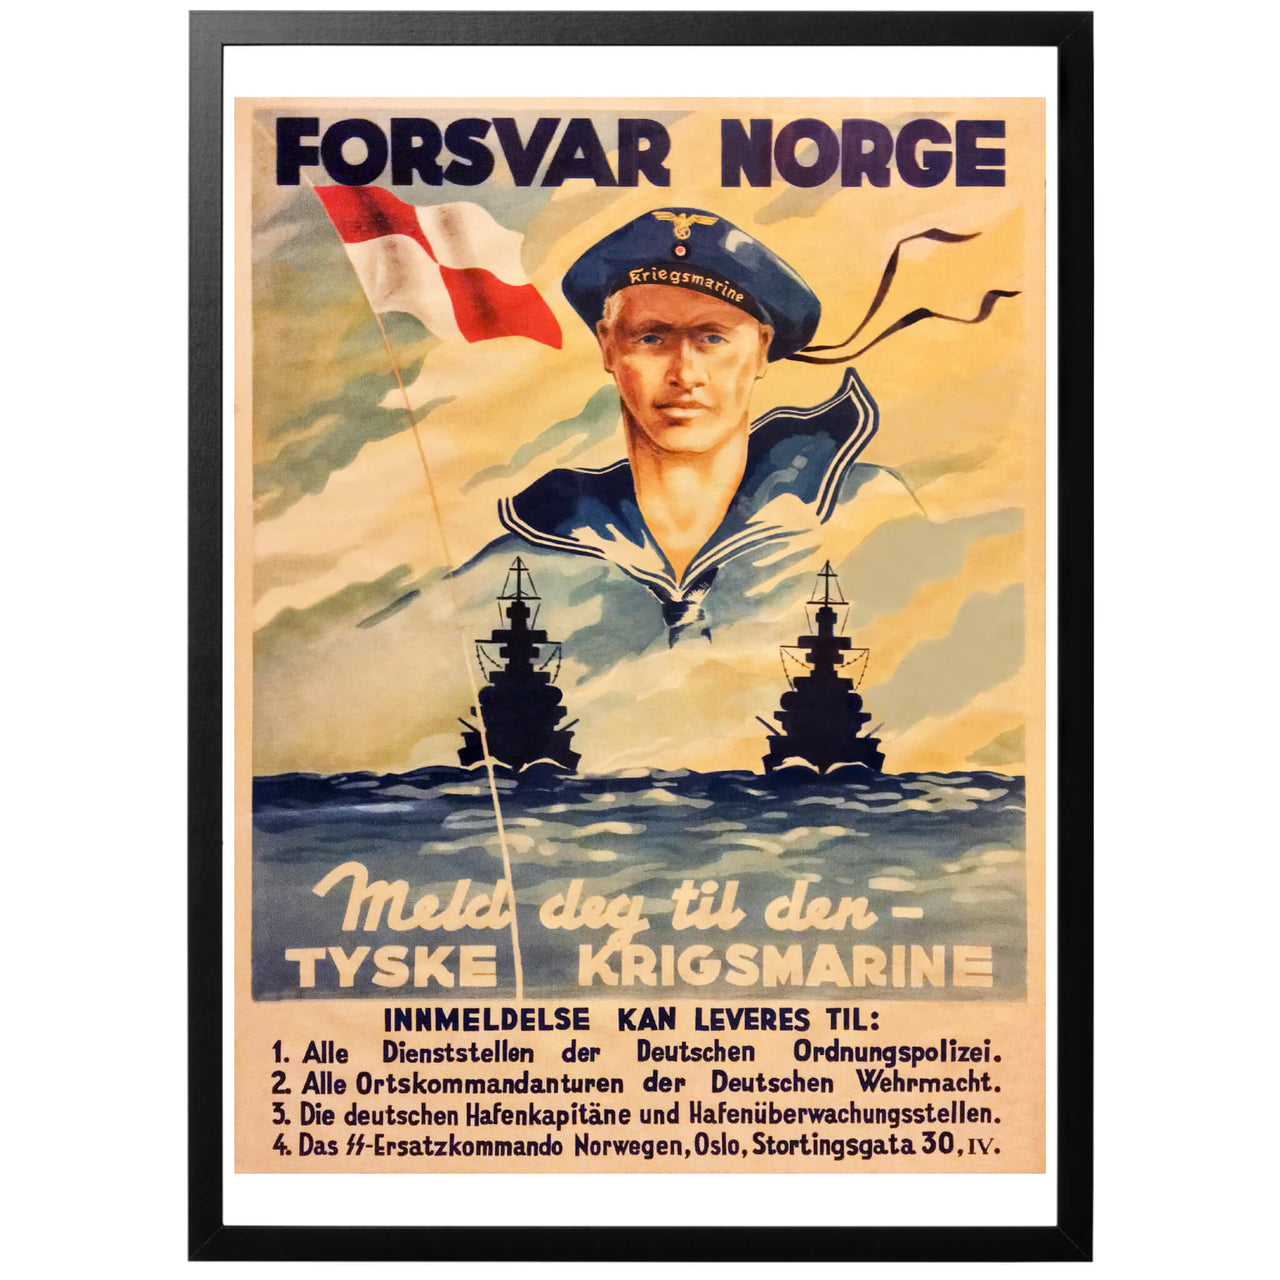 Forsvar Norge Krigesmarine - Norsk ww2 poster från 1941. En intressant affisch för att rekrytera norrmän till den tyska marinen. Man försöker här att, likt rekryteringsaffischerna för Waffen-SS, att koppla Norges försvar till Tyskland och dess militära makt. 